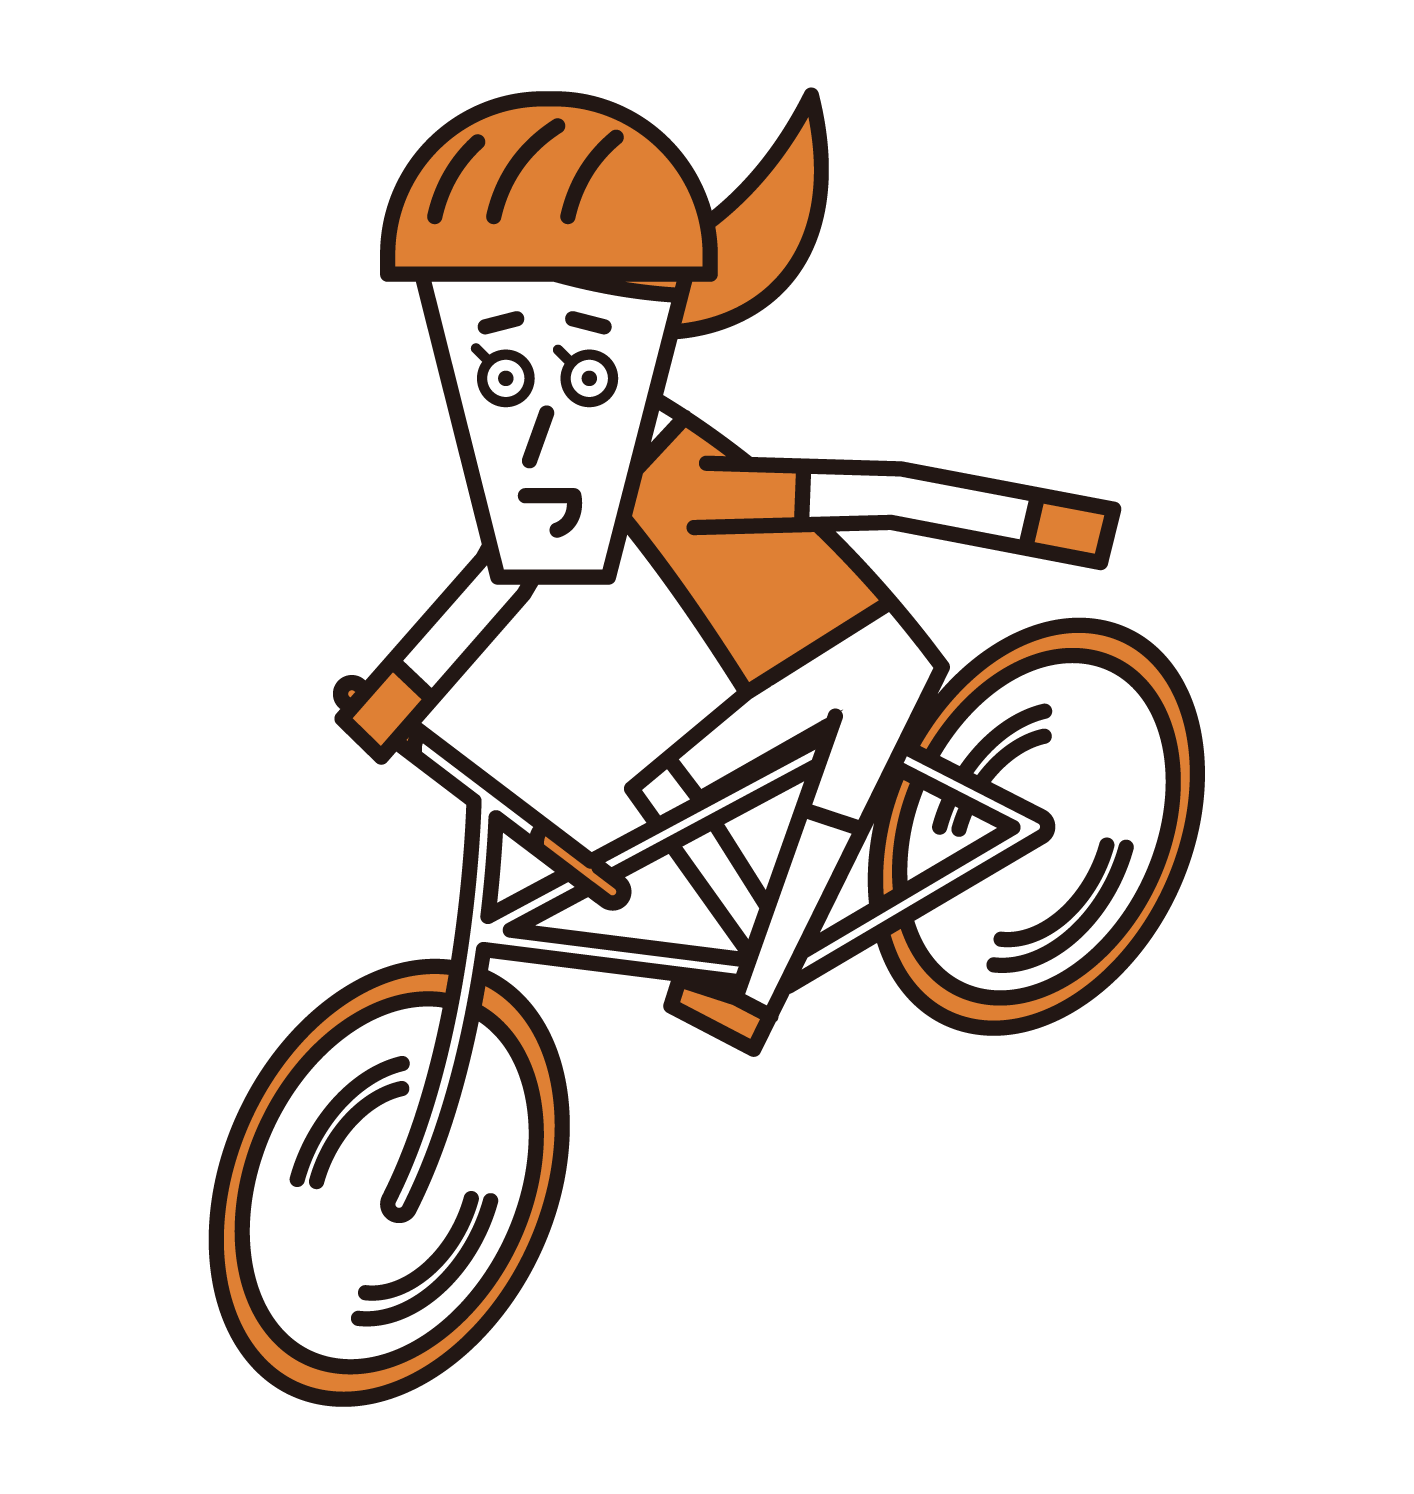 핸드 시그널(손 표지판)이 있는 자전거 타기(여성)의 일러스트